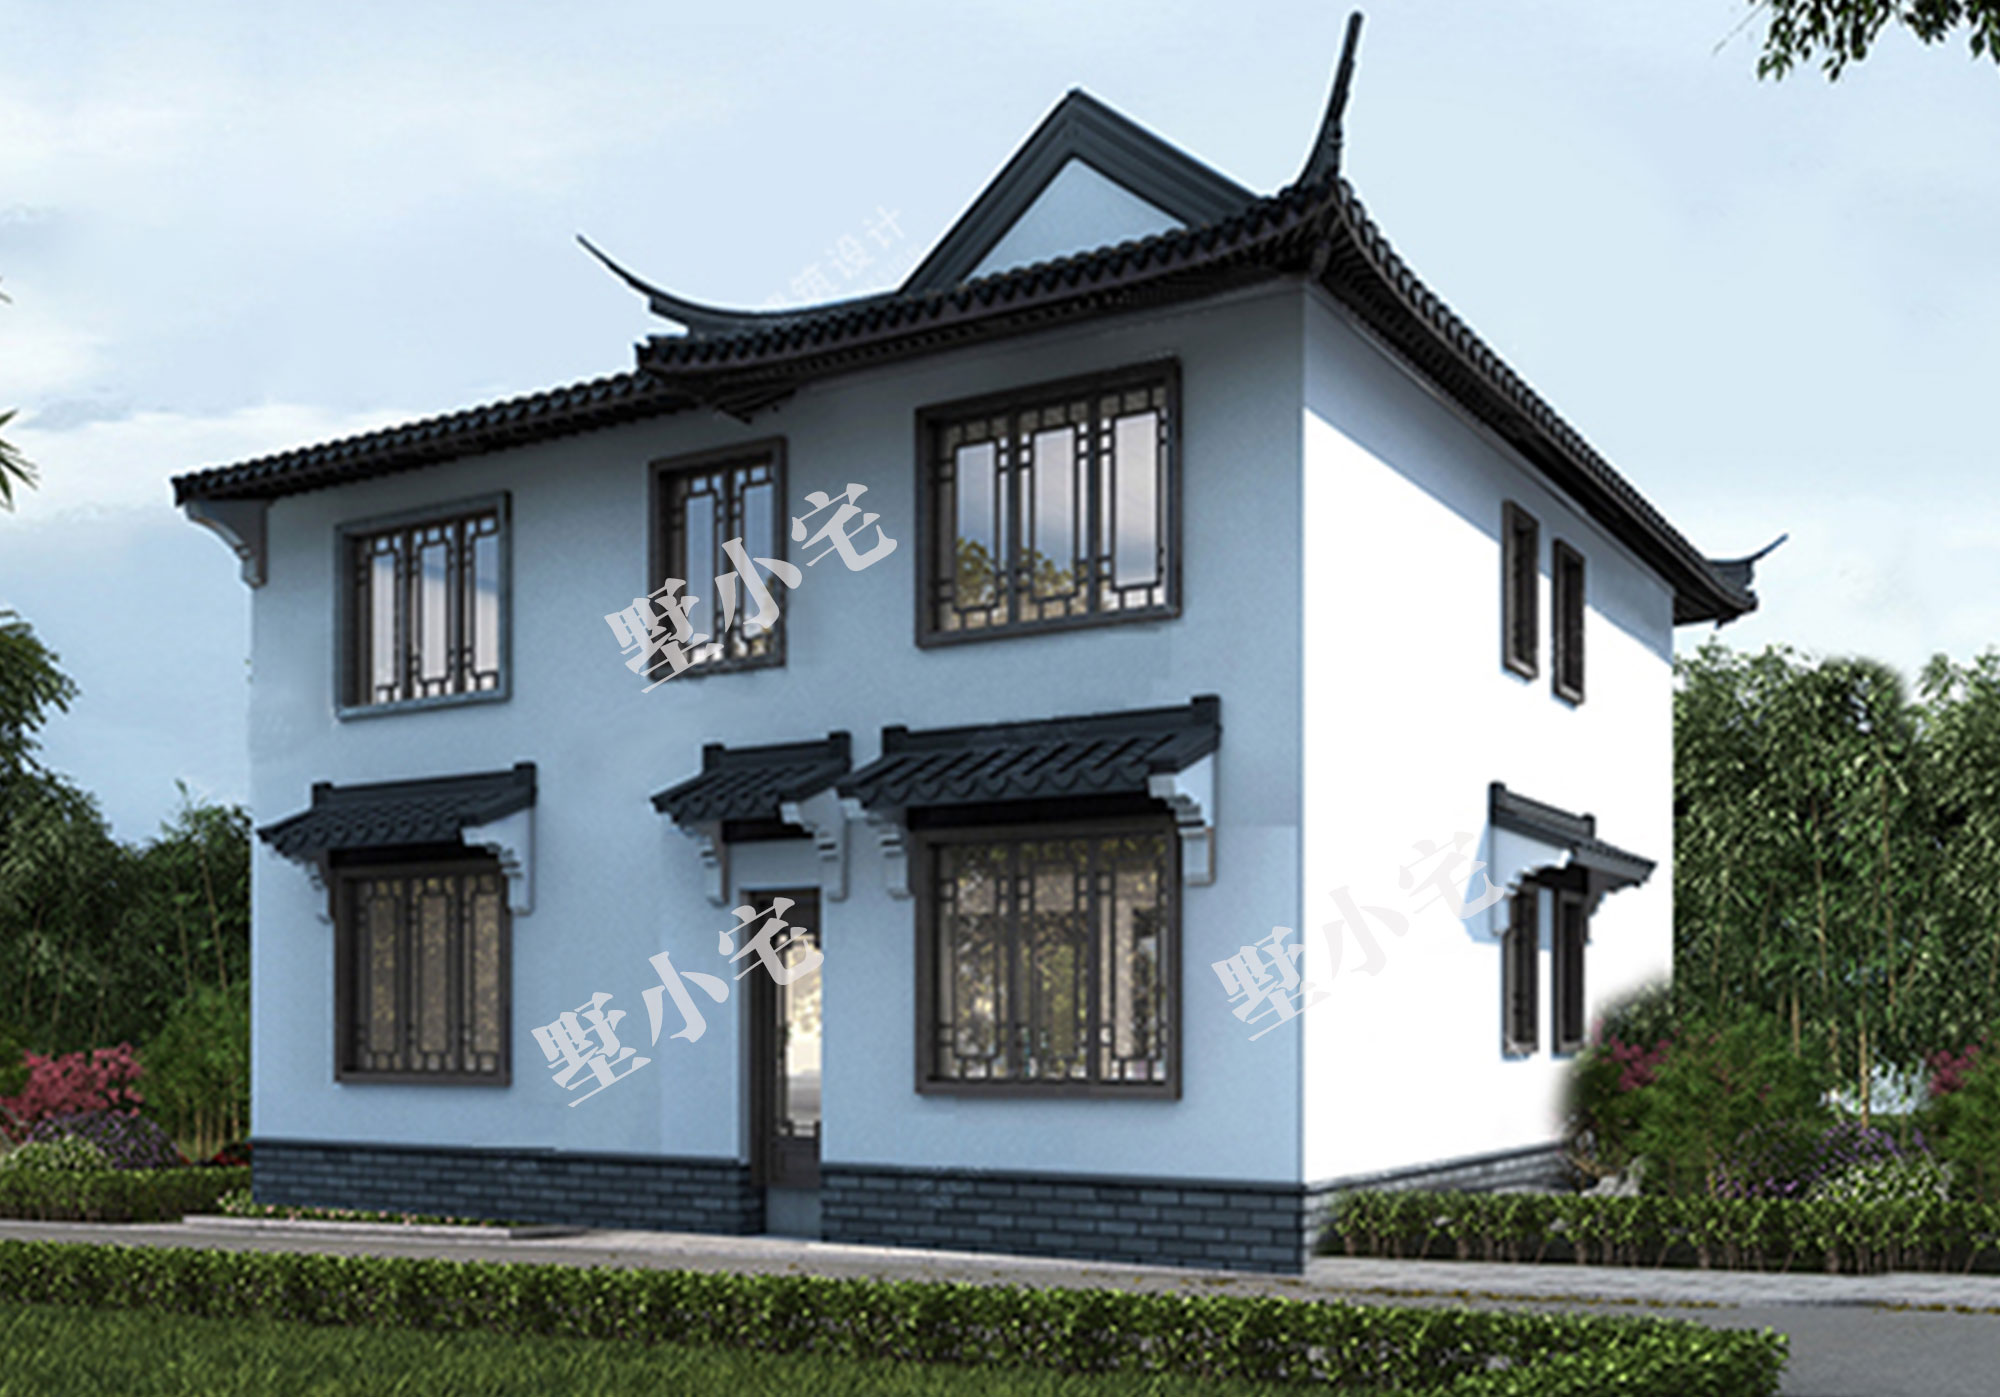 B817二层乡村别墅设计，传统中式房屋大气美观